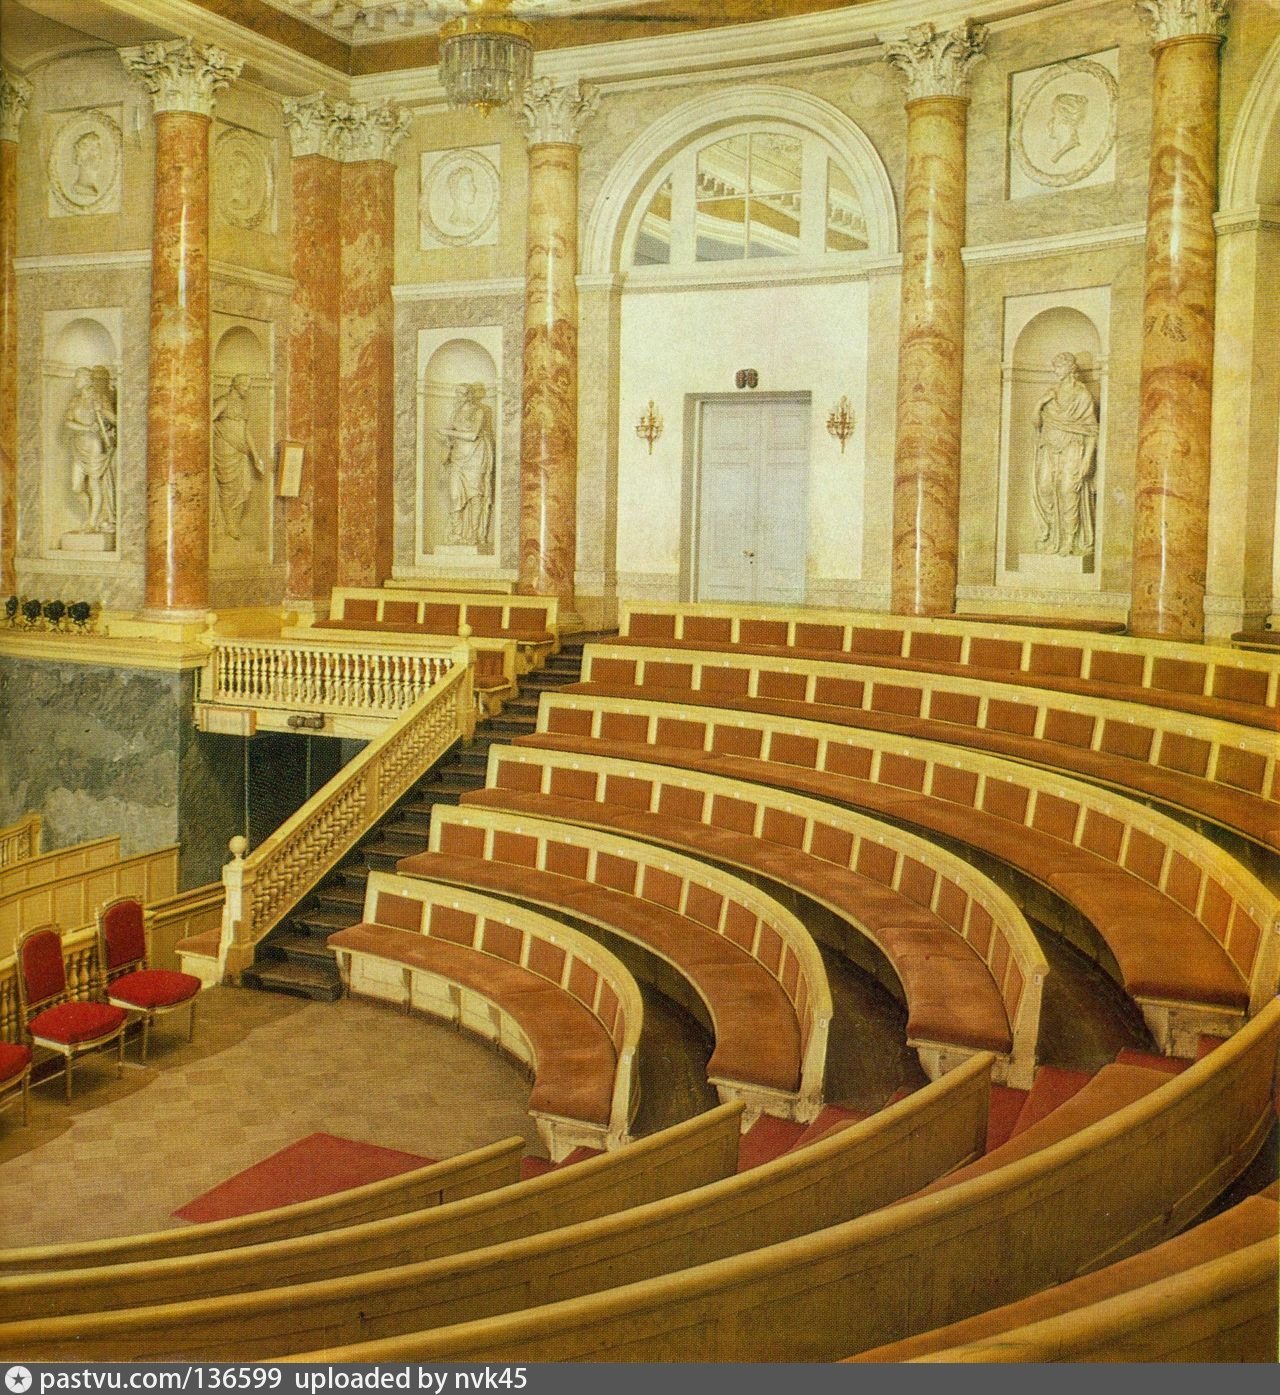 театр эрмитаж санкт петербург